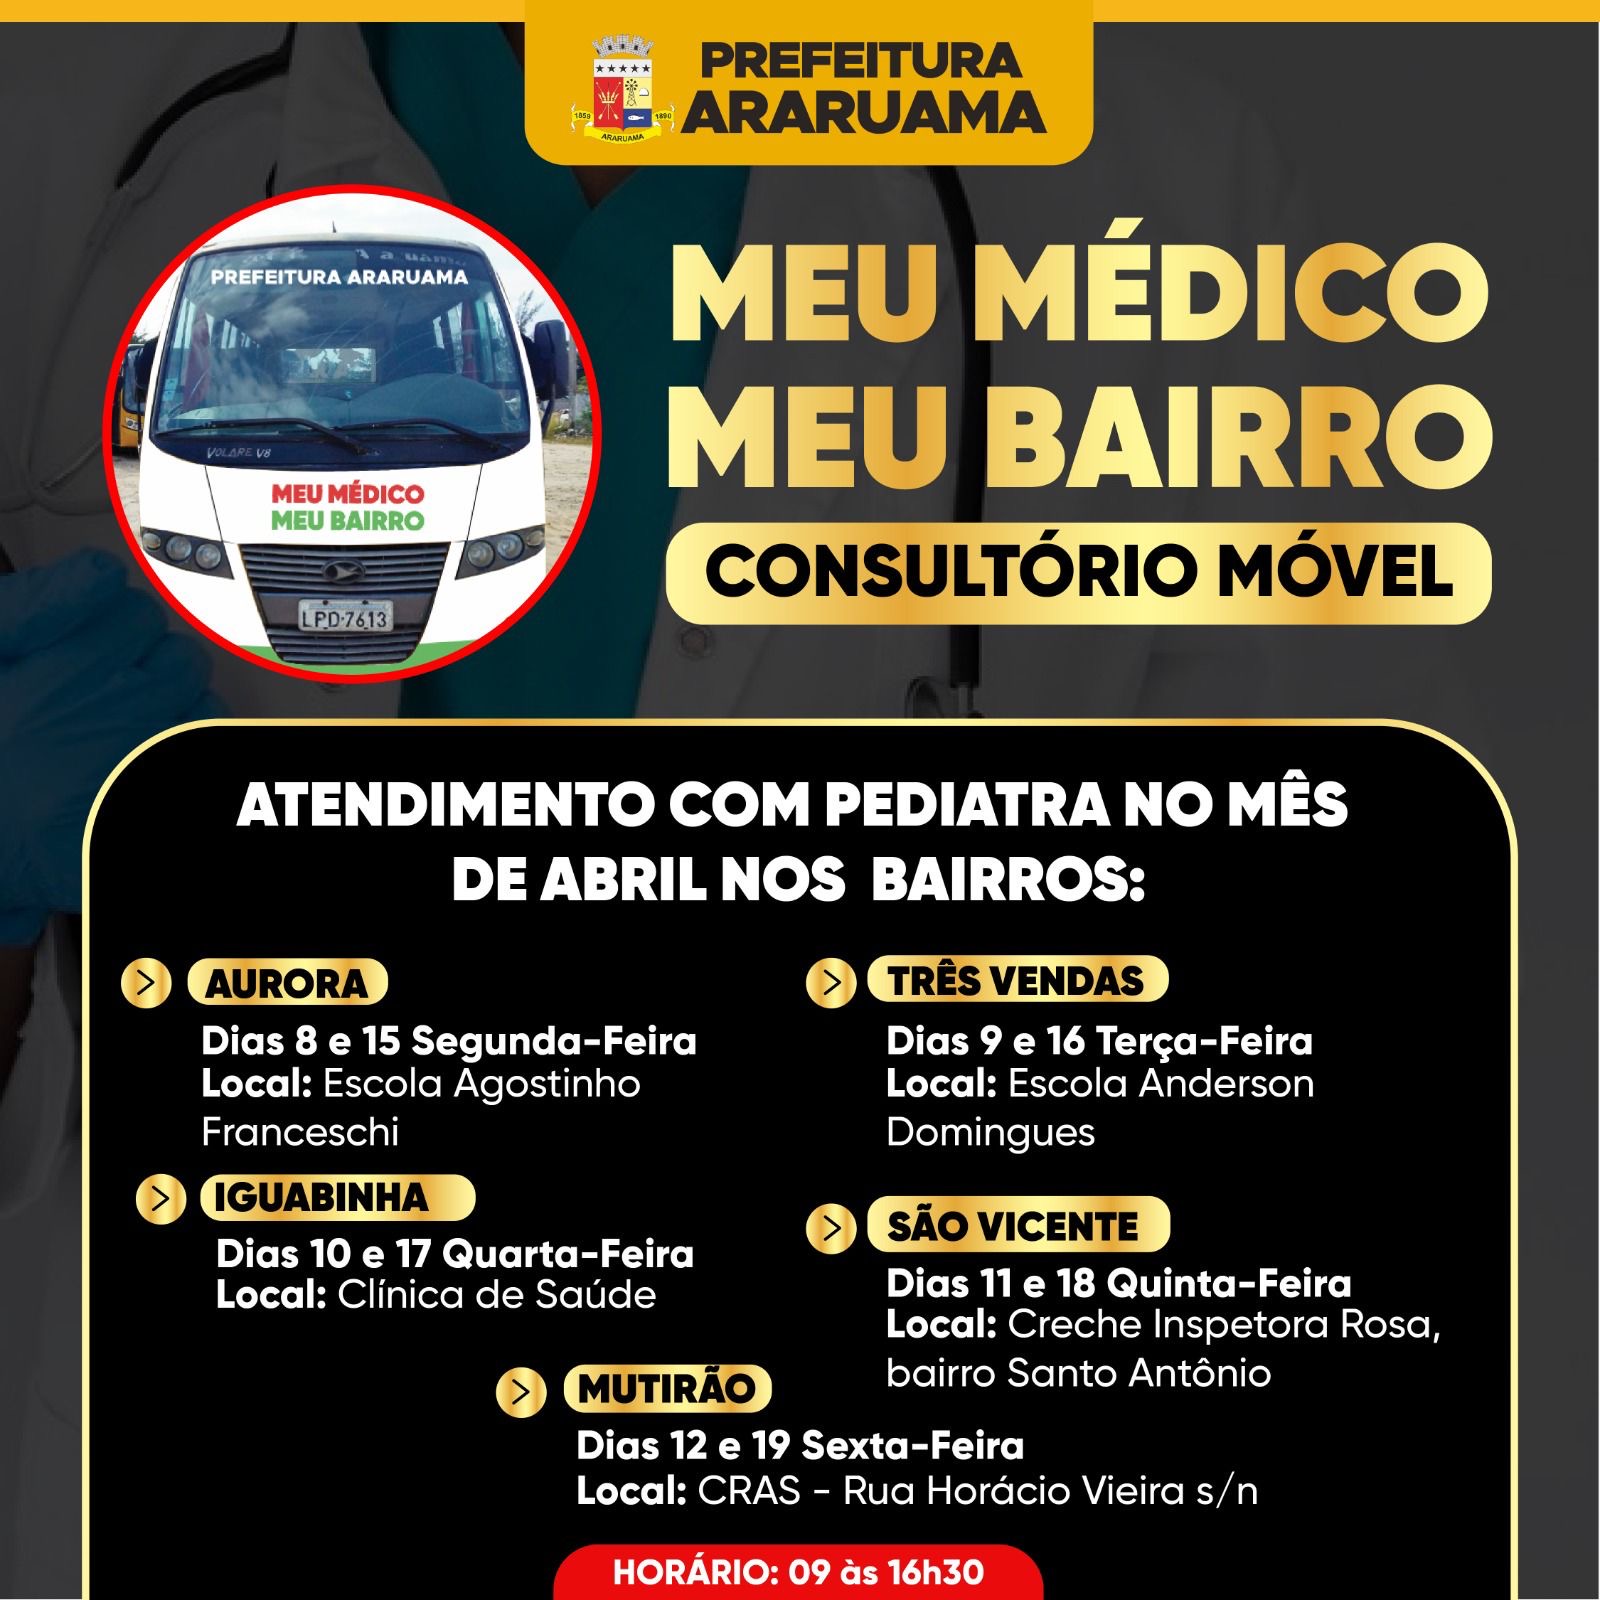 Prefeitura de Araruama divulga cronograma do programa “Meu médico, Meu bairro” para o mês de abril